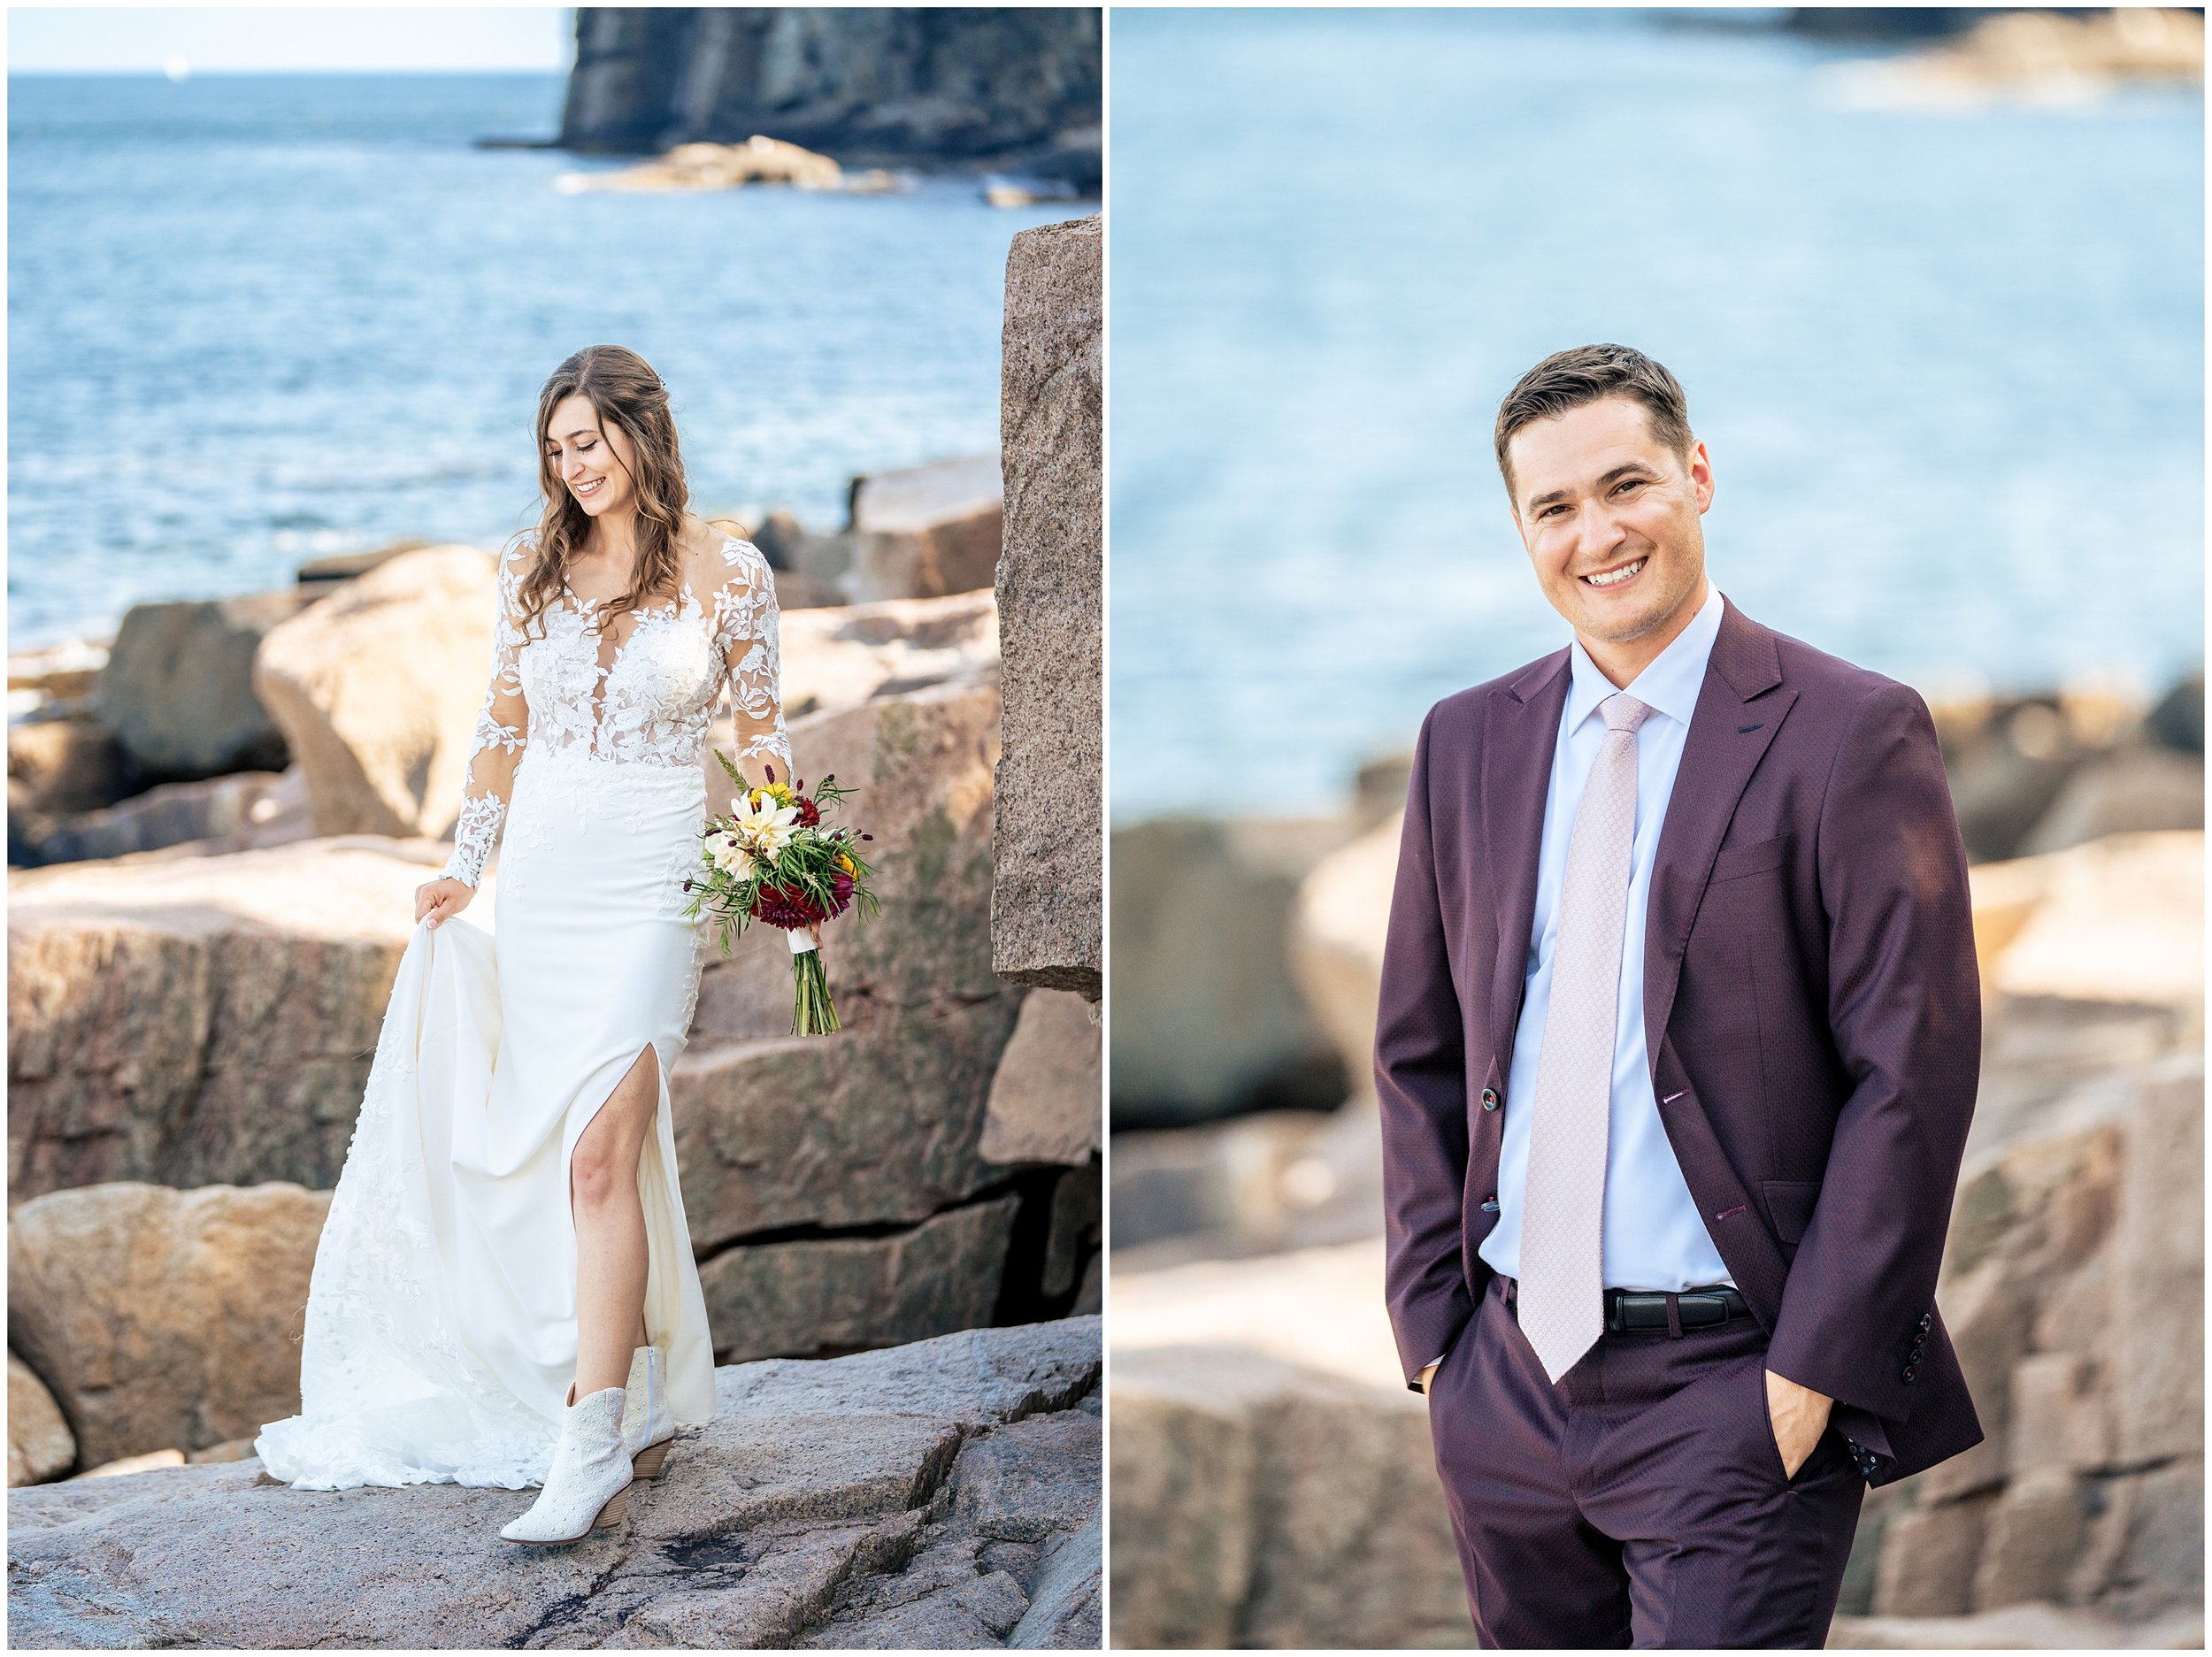 Acadia National Park Wedding Photographers, Bar Harbor Wedding Photographers, Two Adventurous Souls- 082423_0041.jpg